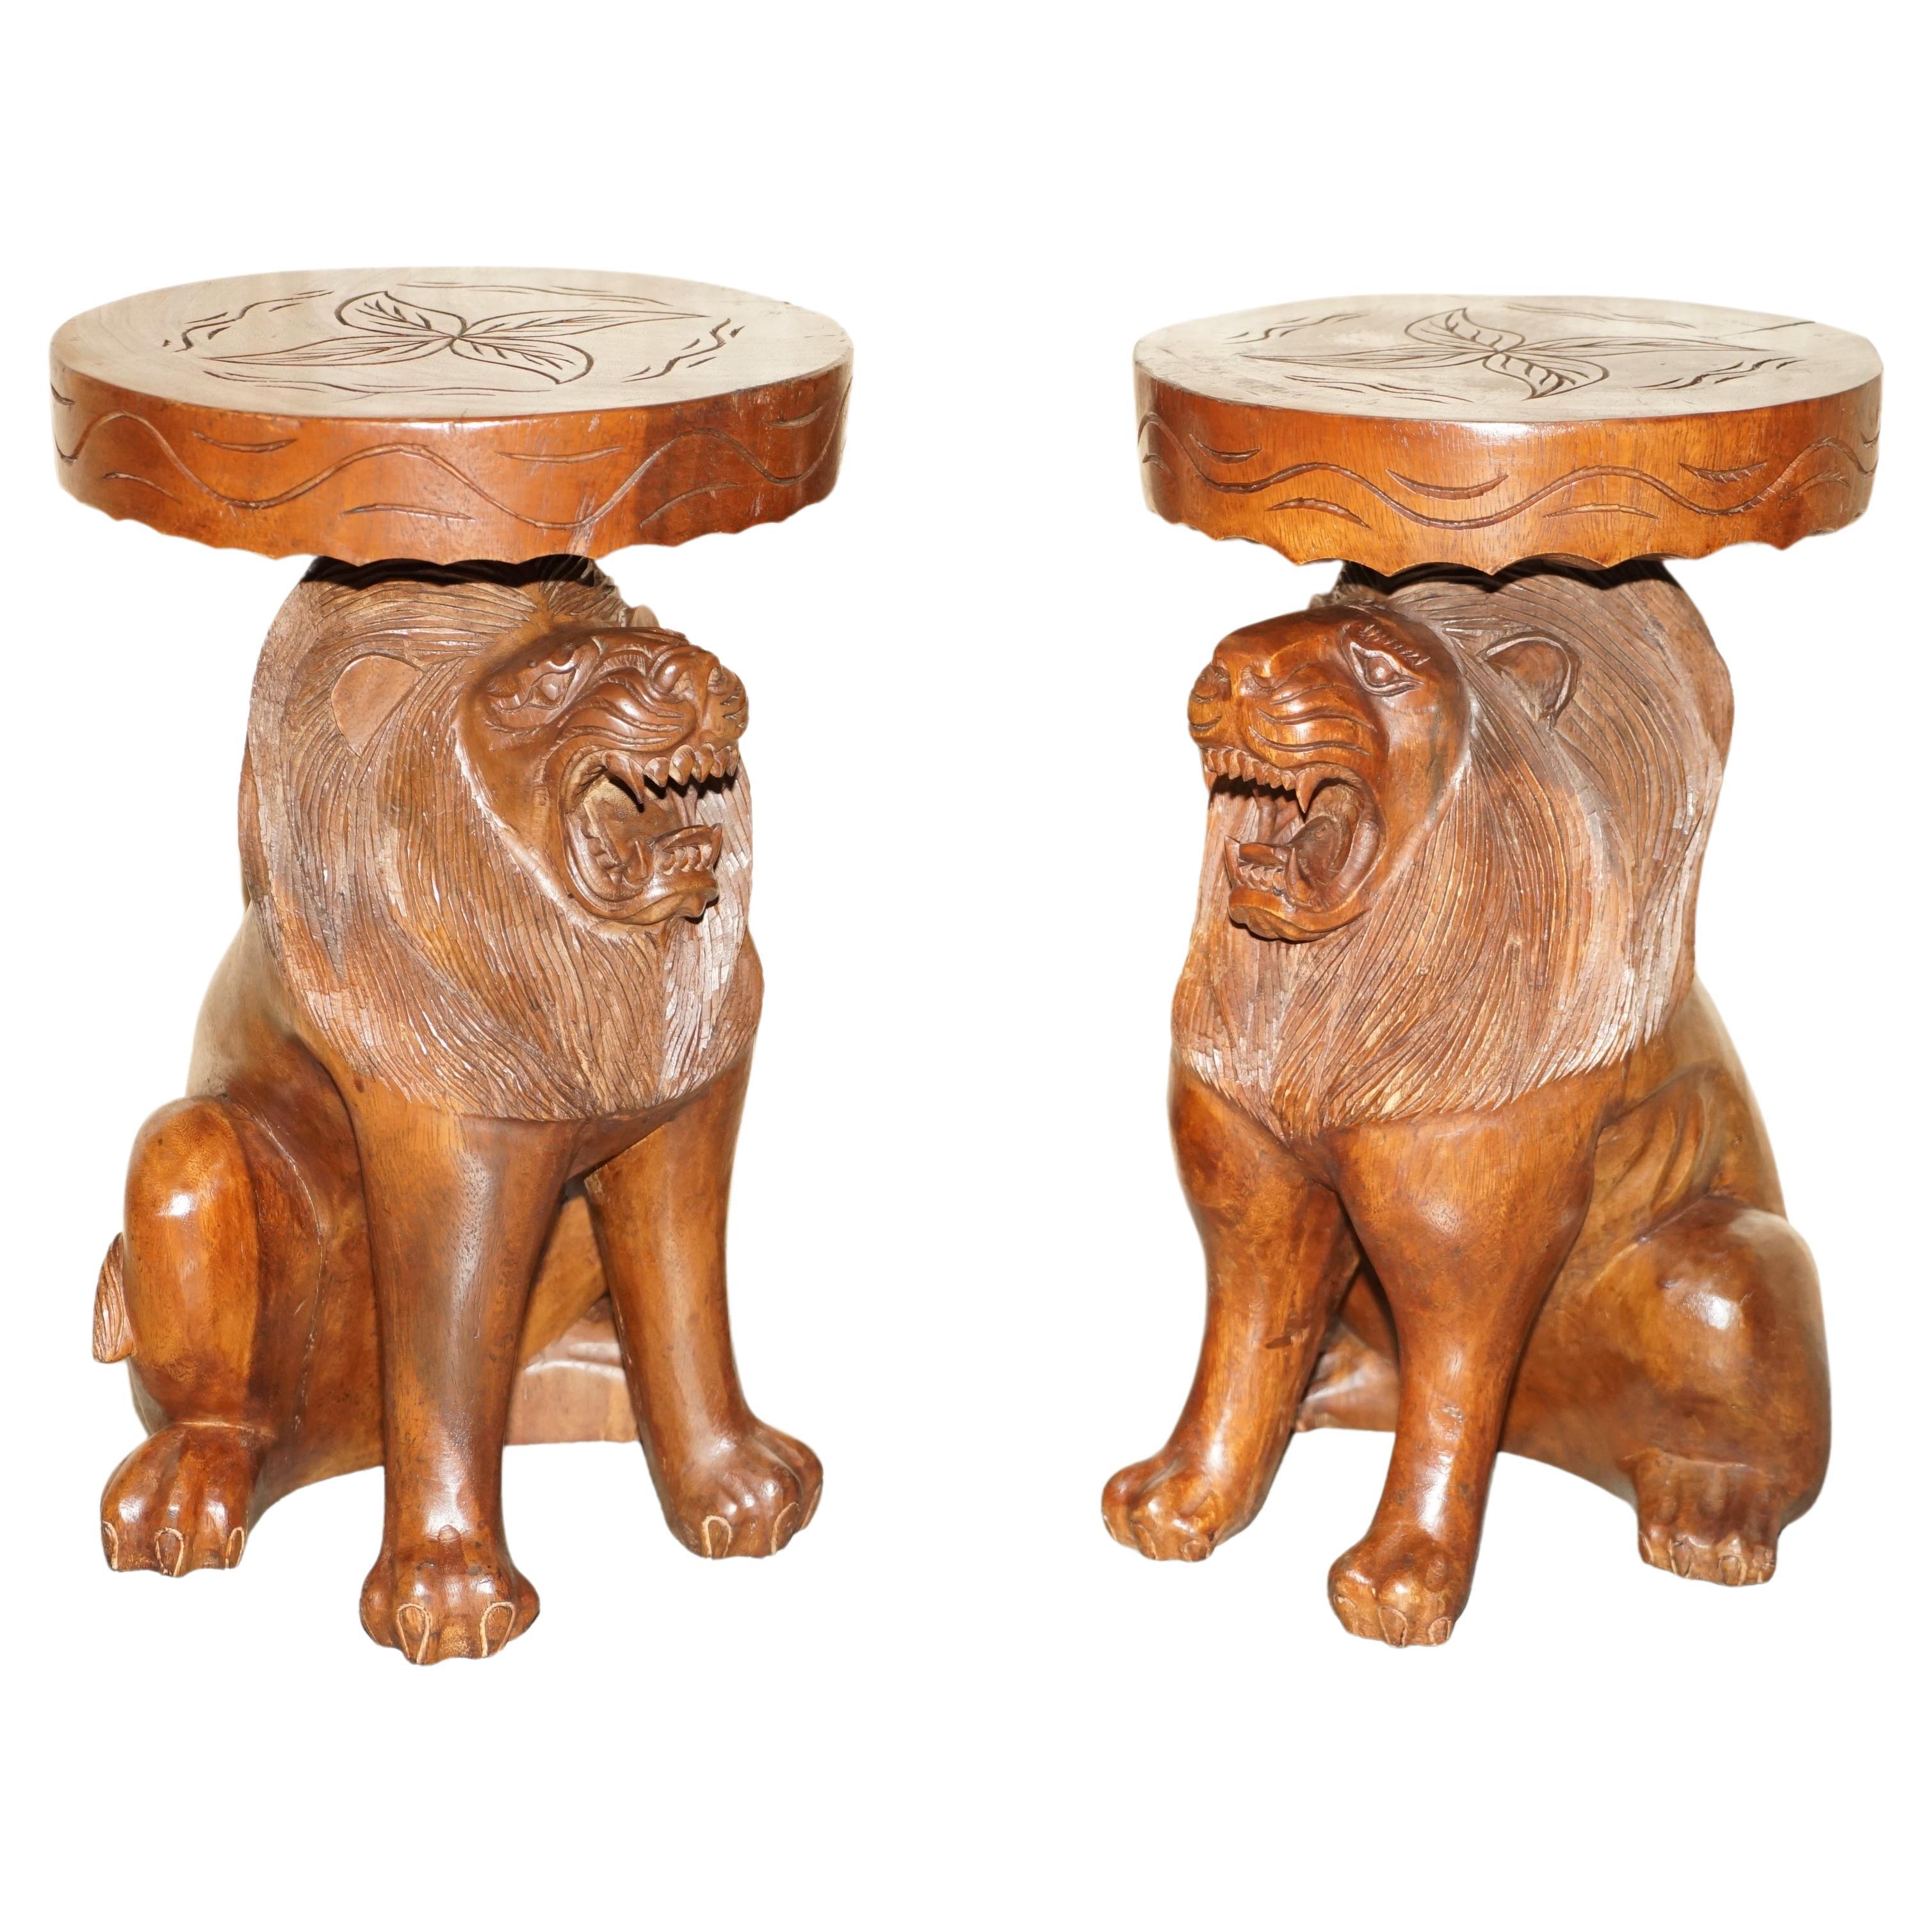 Paire de tabourets d'époque en forme de lions mâles sculptés à la main avec des décorations originales sur toute leur surface.